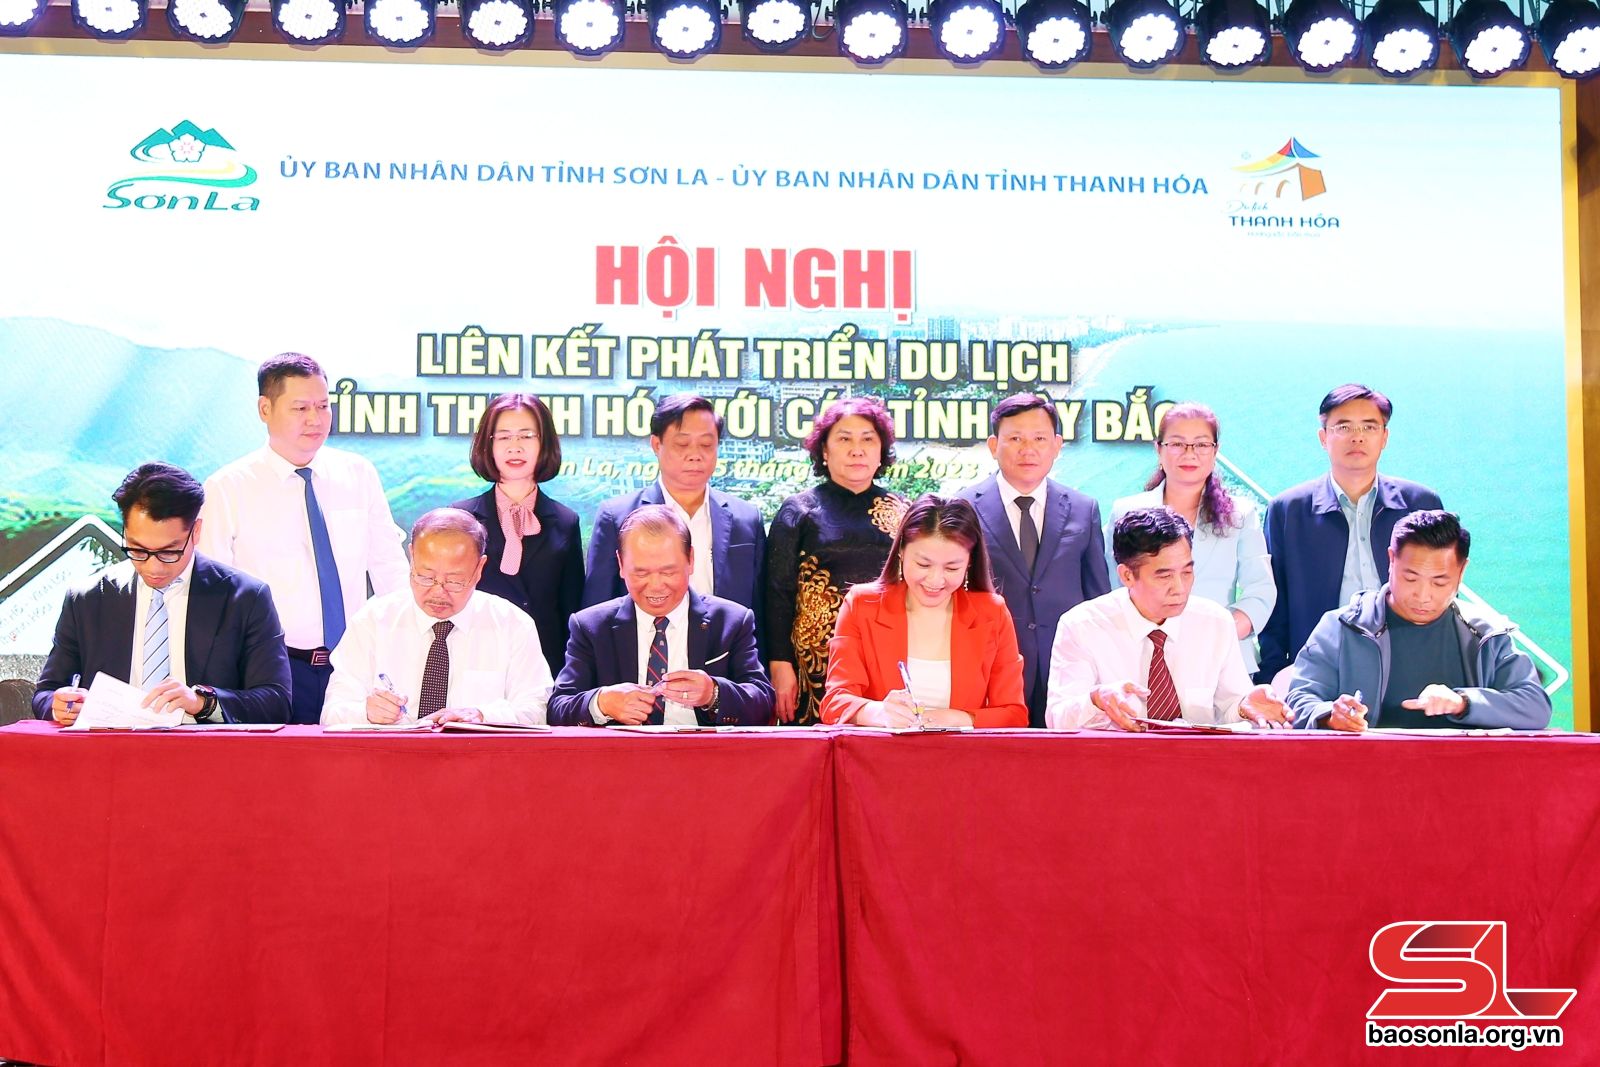 Liên kết phát triển du lịch tỉnh Thanh Hóa với các tỉnh Tây Bắc